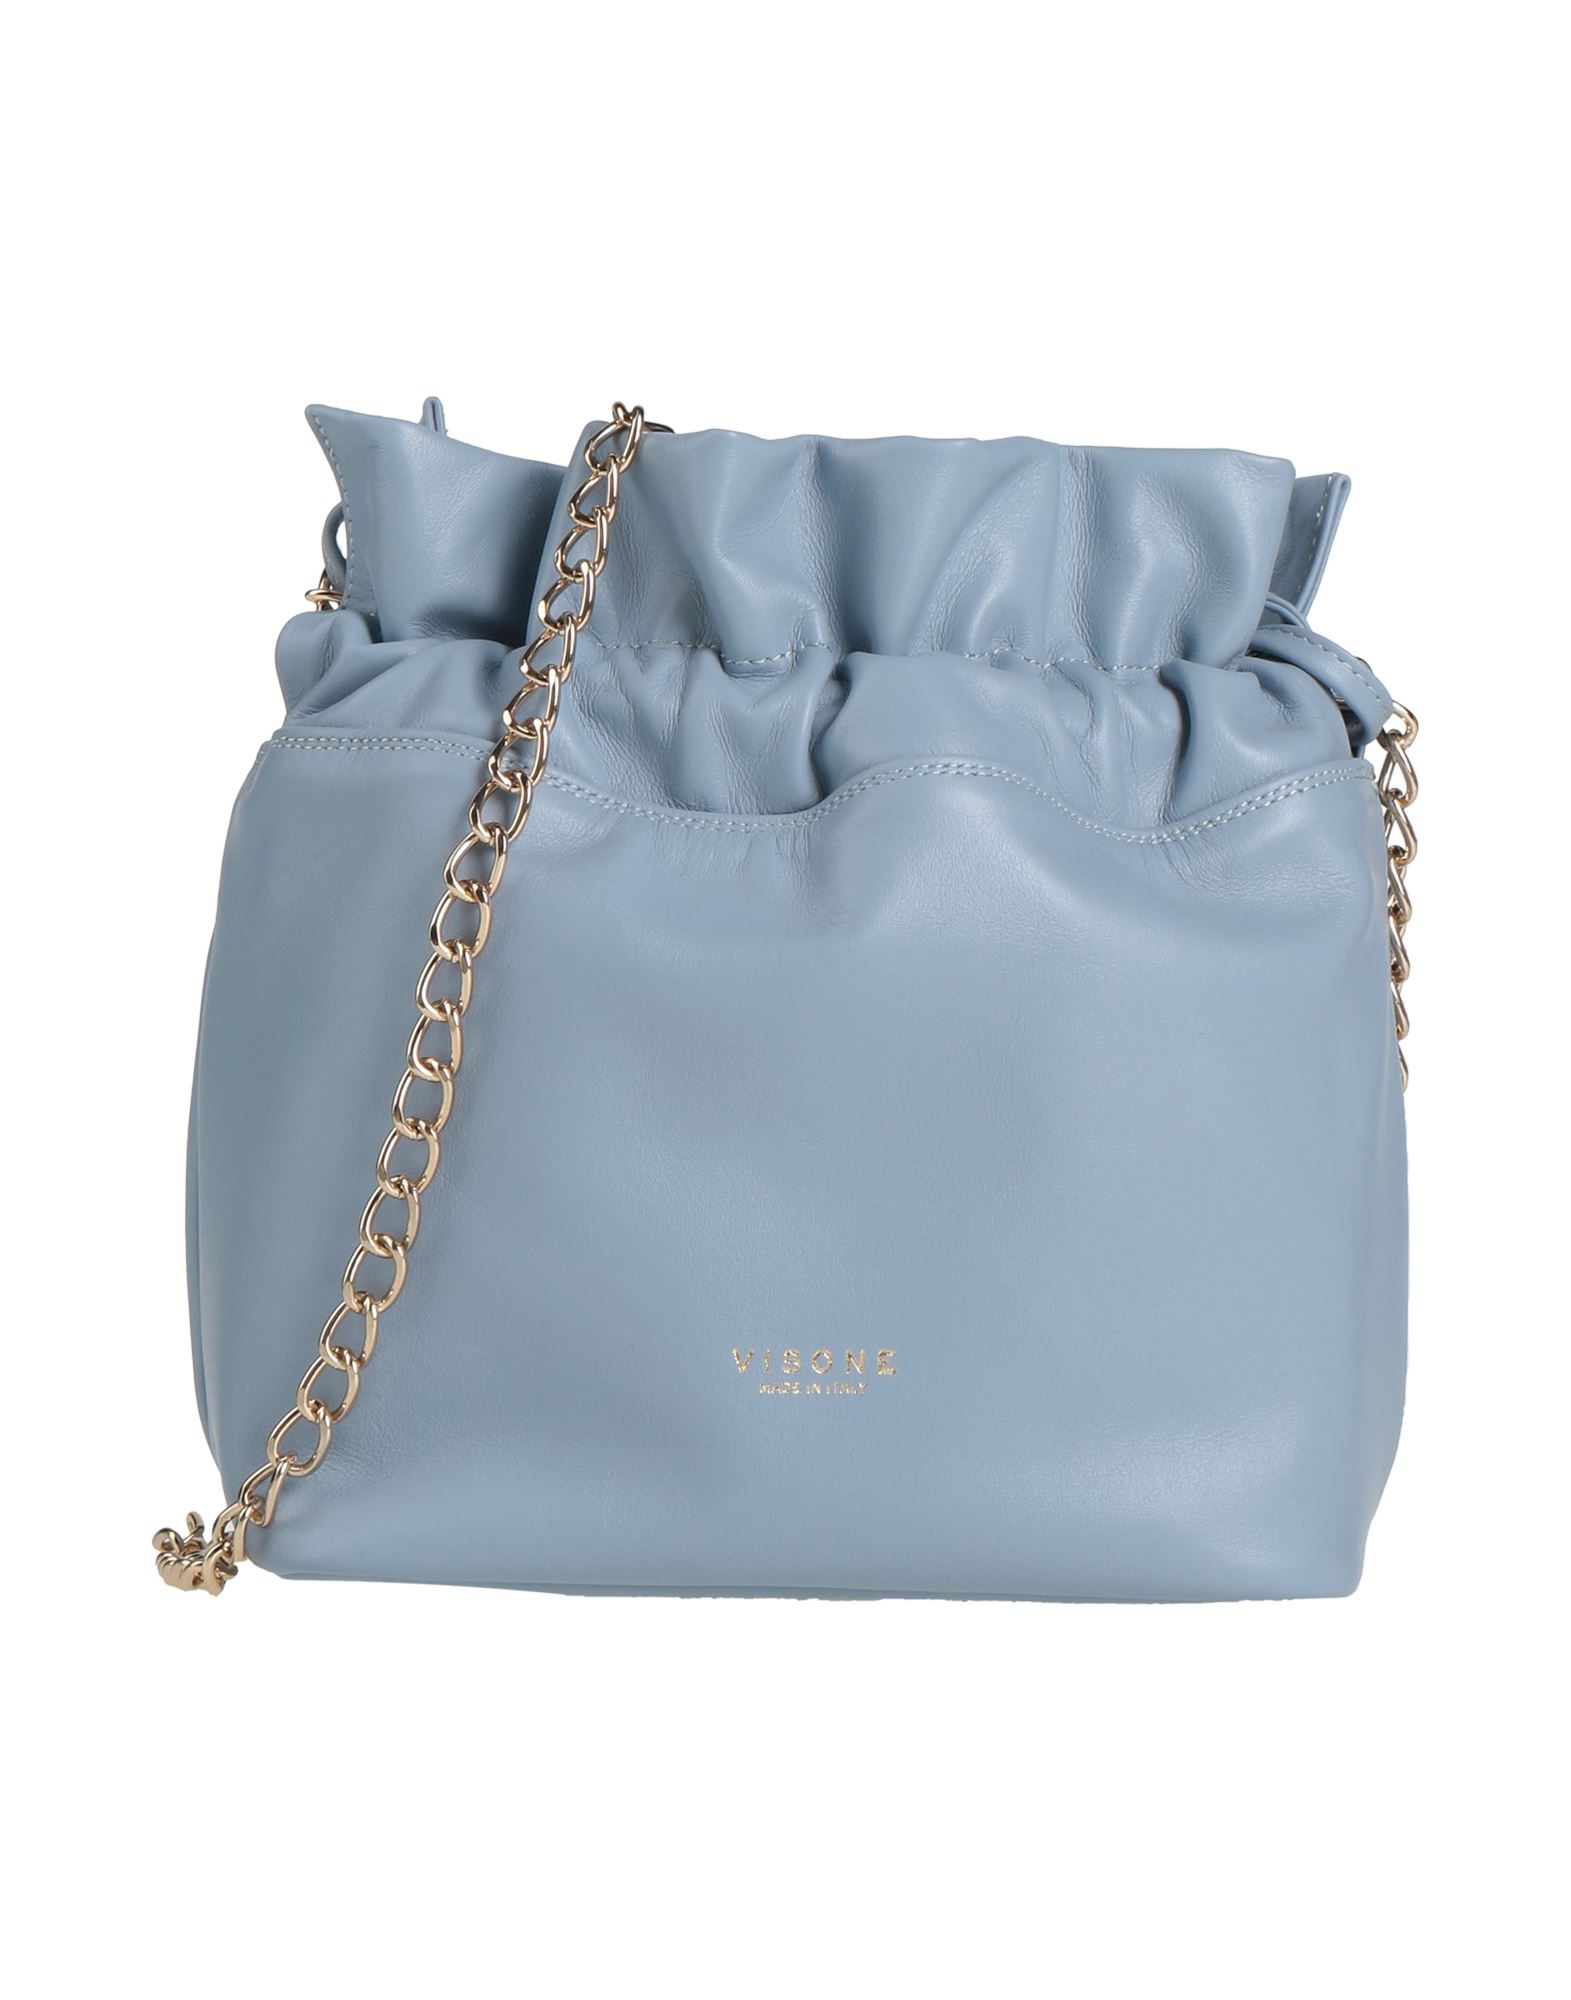 Visone Handbags In Blue